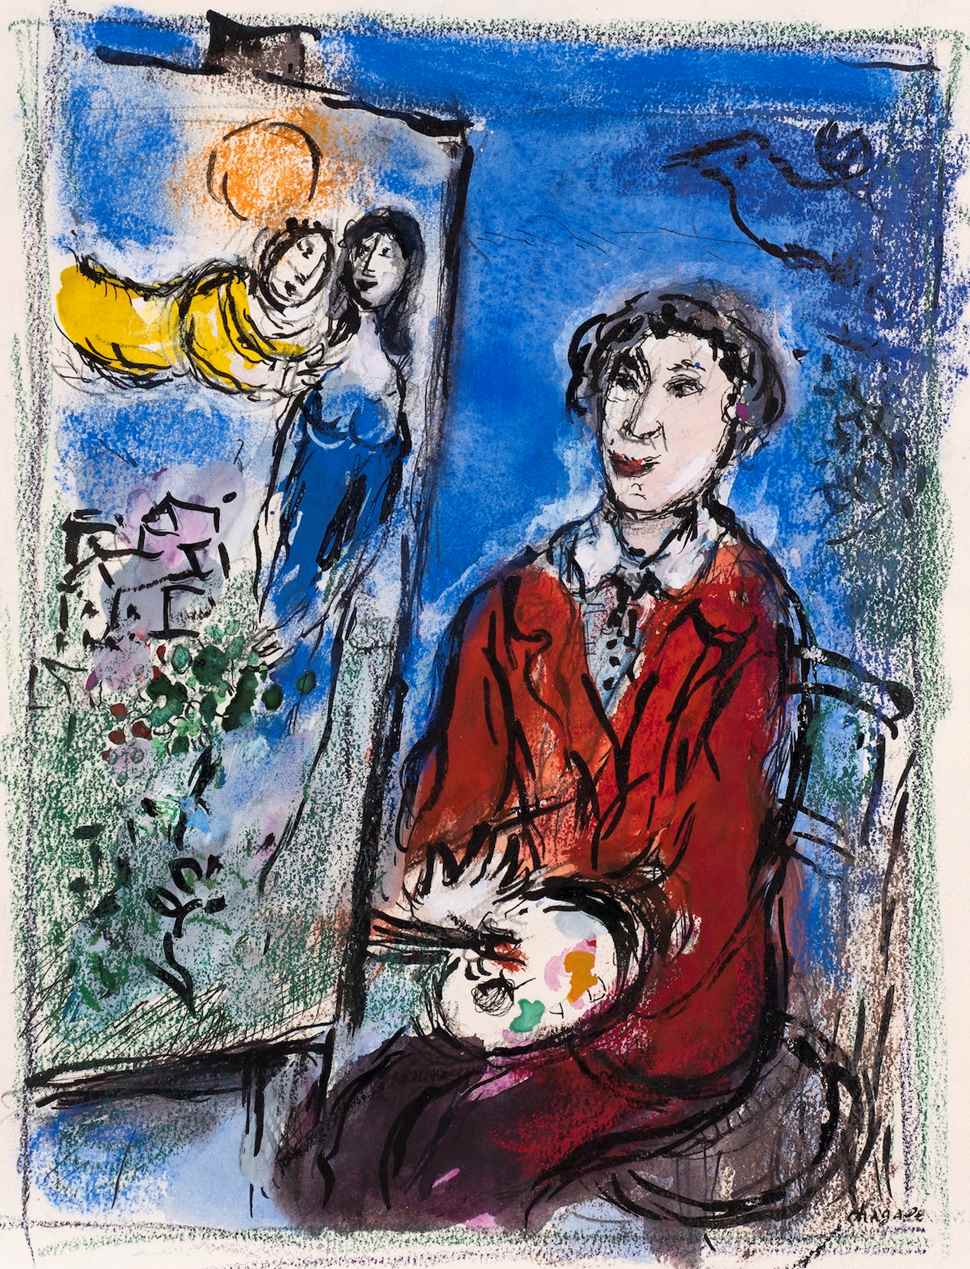 Le Peintre devant "Le Soleil Rouge" - Marc Chagall (1887 - 1985)